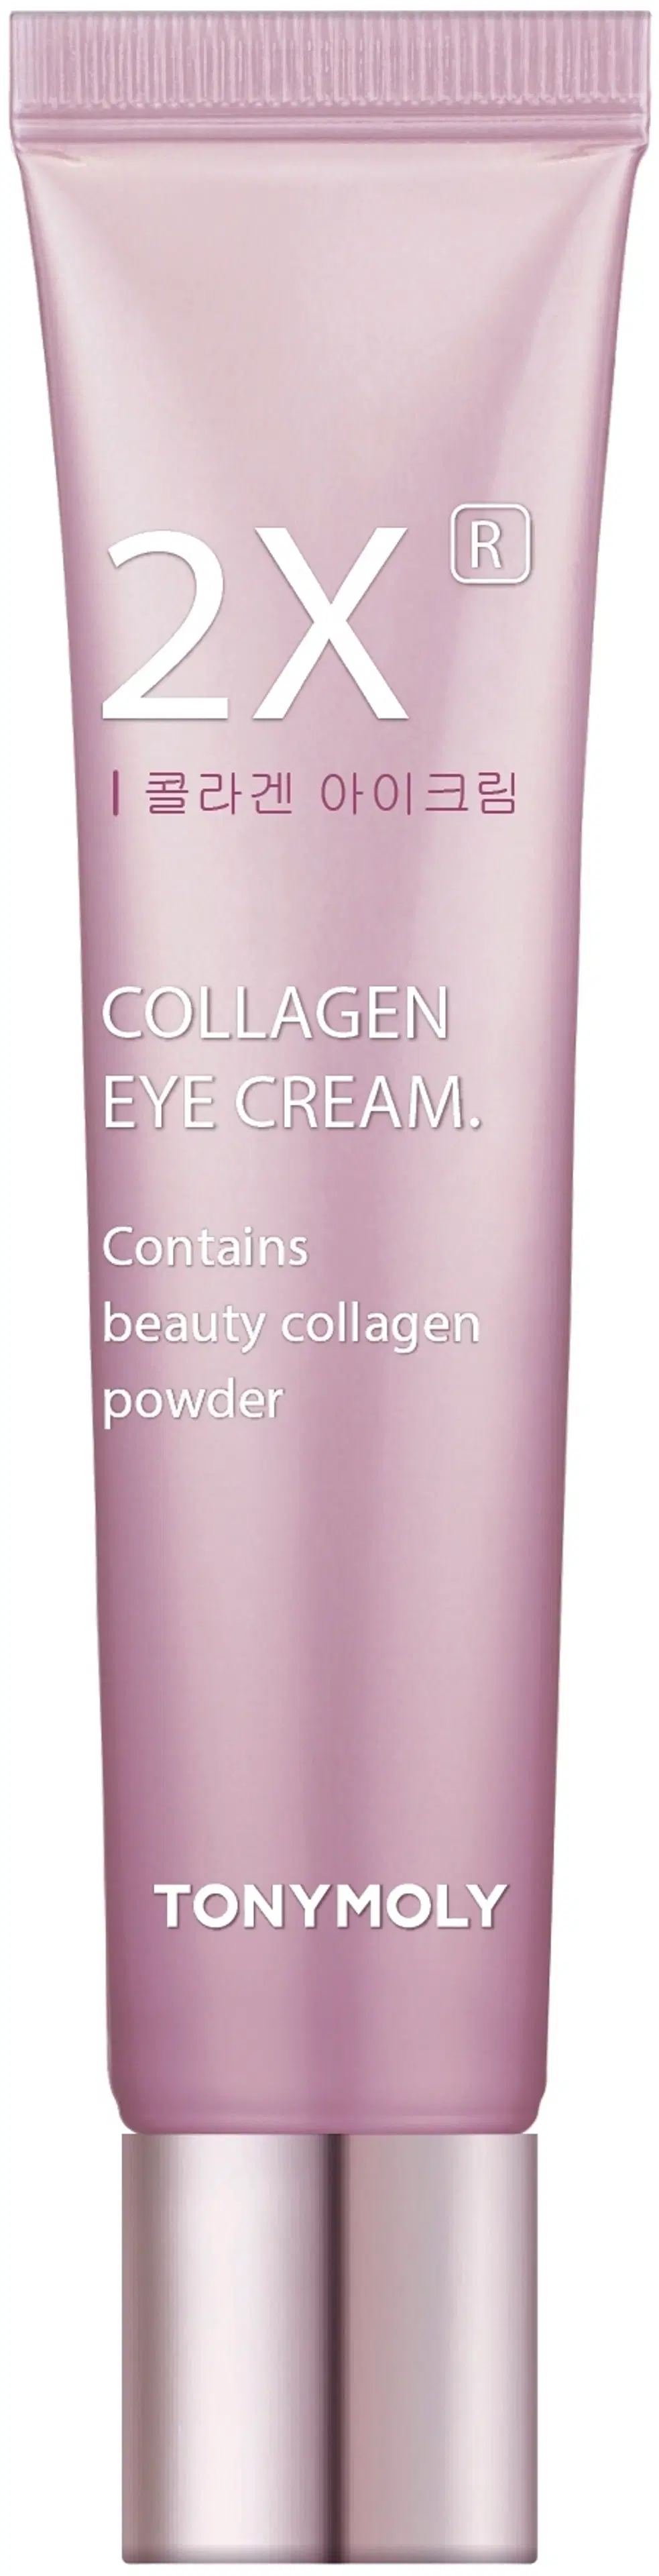 TONYMOLY 2X® Collagen Eye Cream kiinteyttävä silmänympärysvoide 30ml